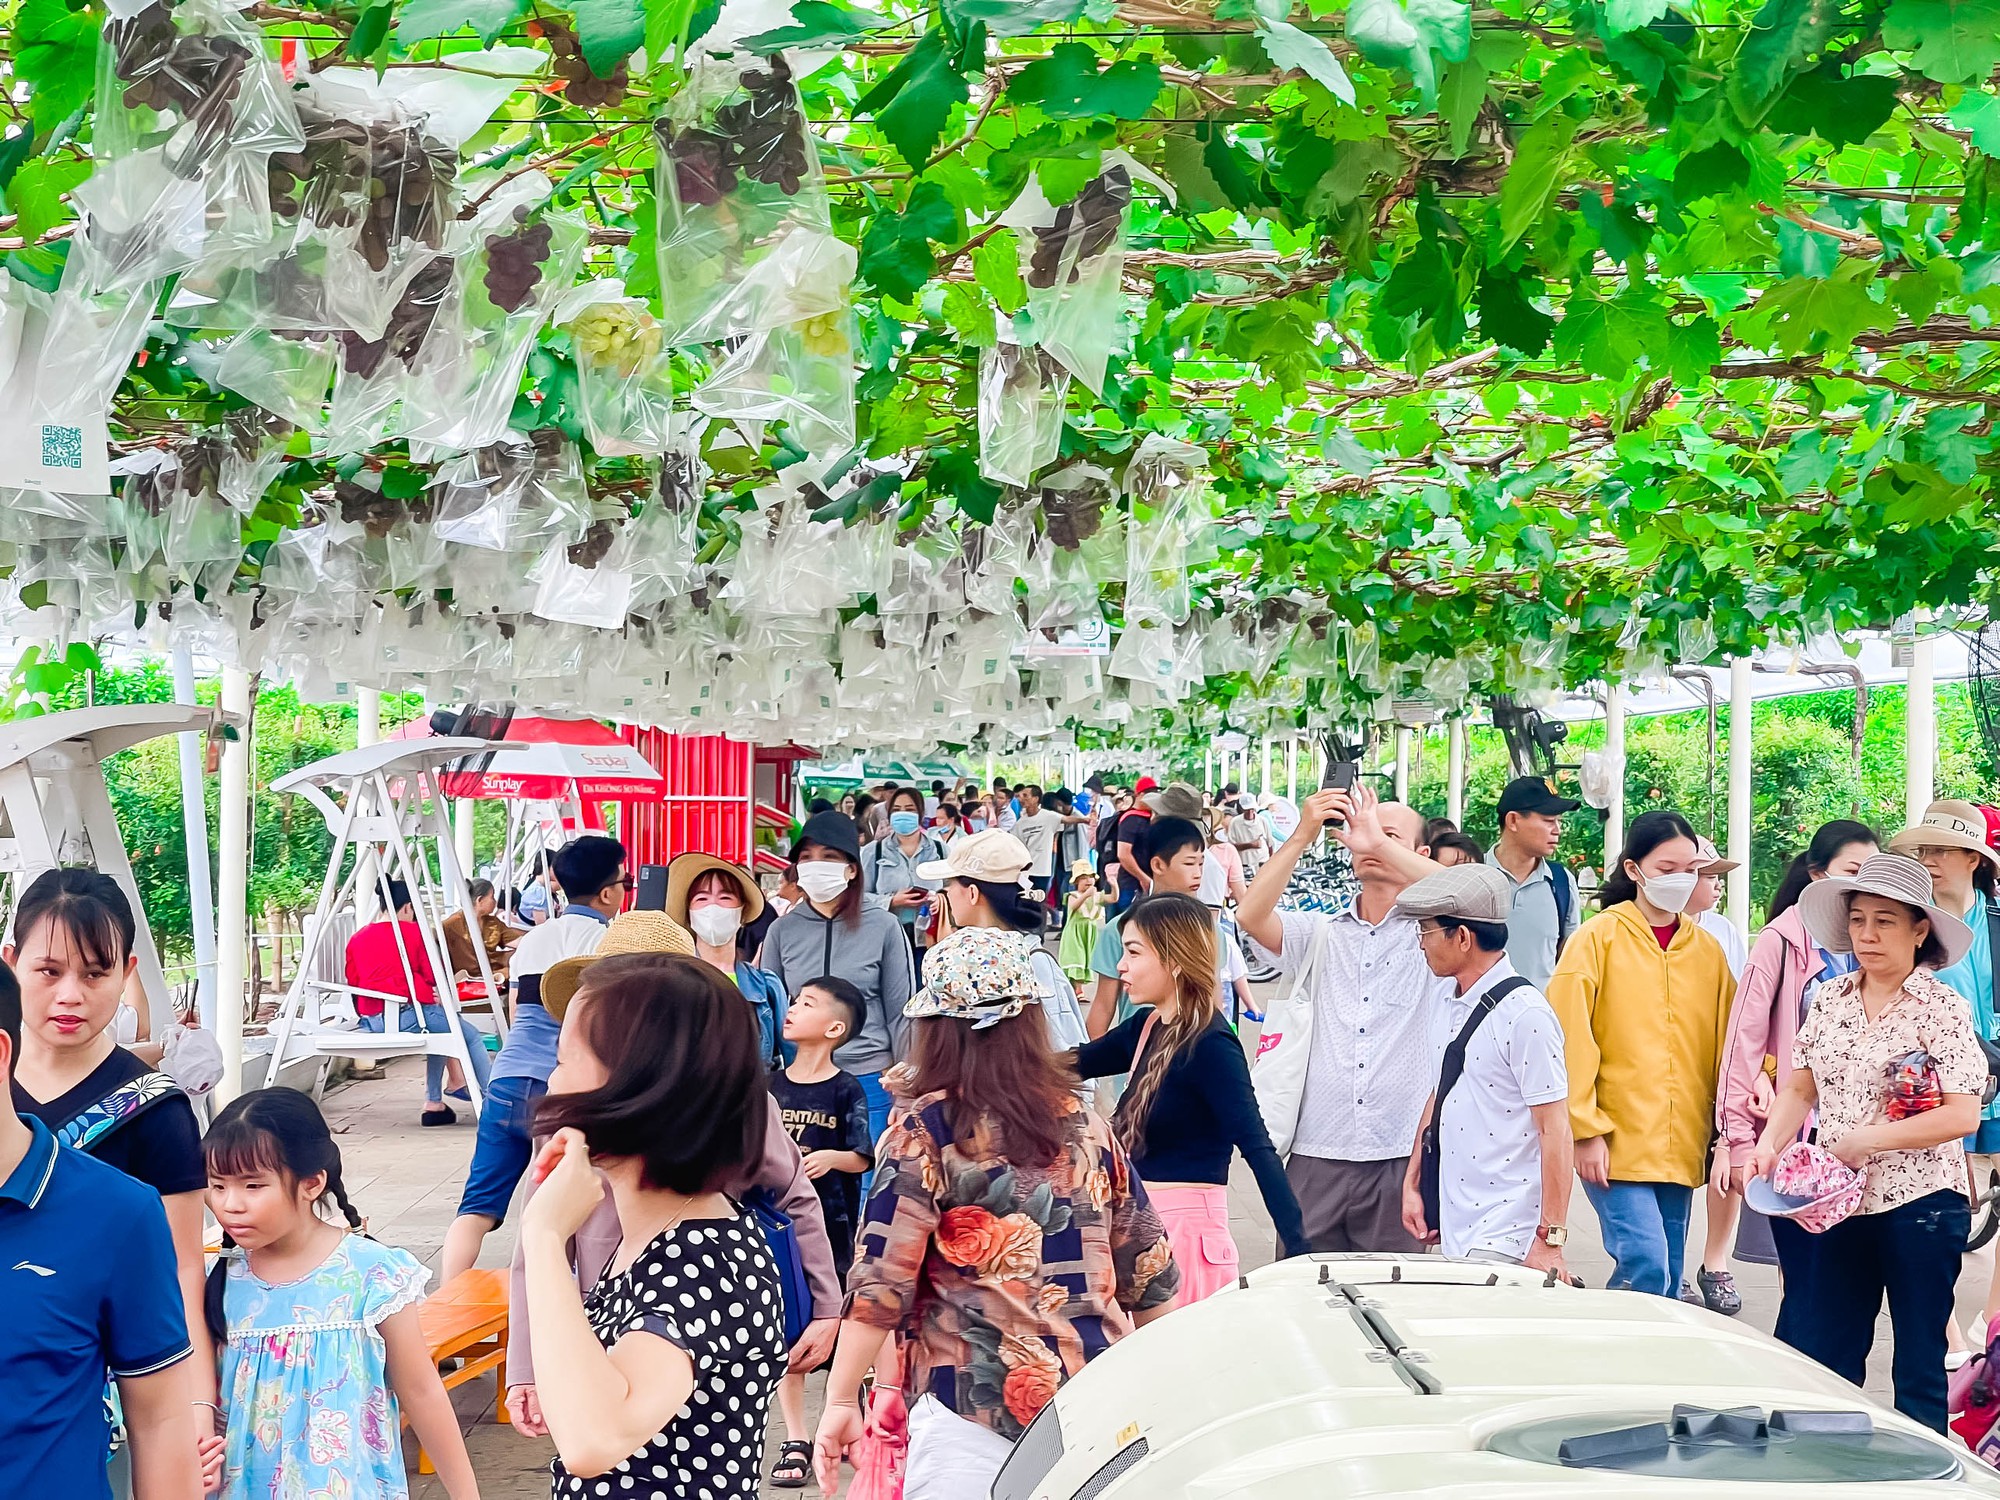 Đã mắt vườn nho Pháp khủng giữa Sài Gòn, có cả dưa hấu leo cây, khách thích thú tự tay hái, ăn tại chỗ - Ảnh 3.